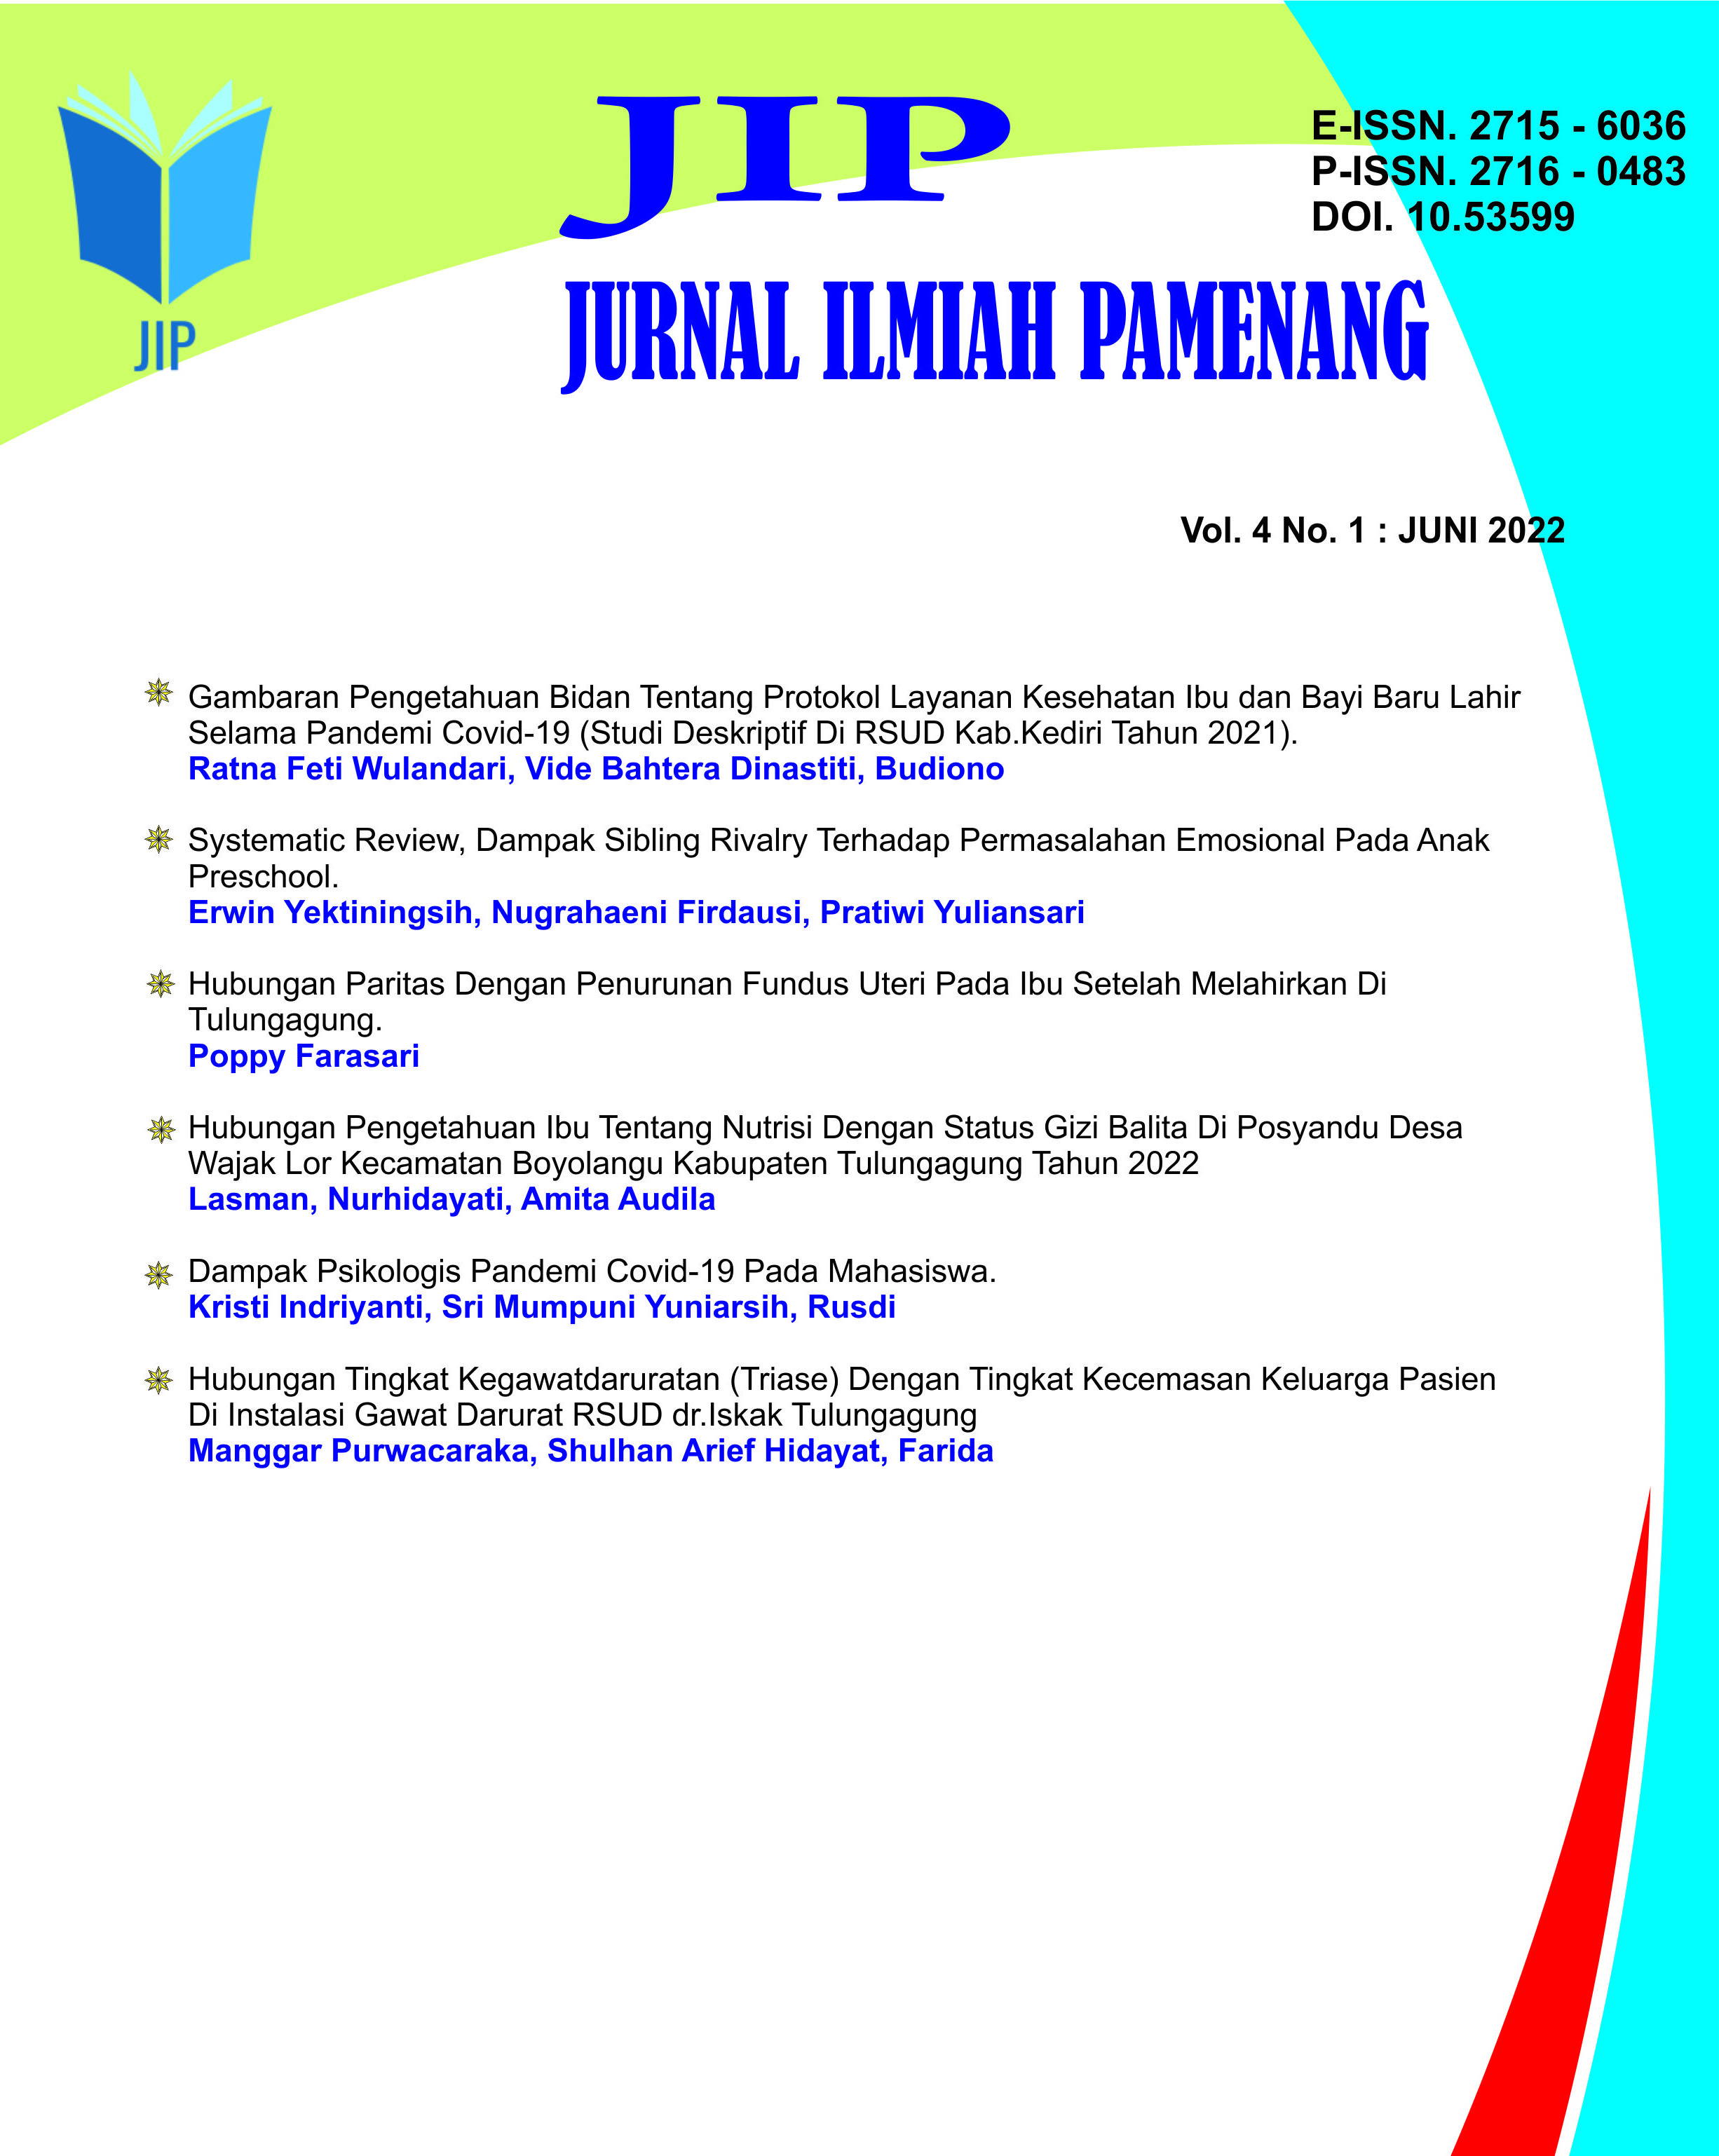 					View Vol. 4 No. 1 (2022): Jurnal Ilmiah Pamenang - JIP
				